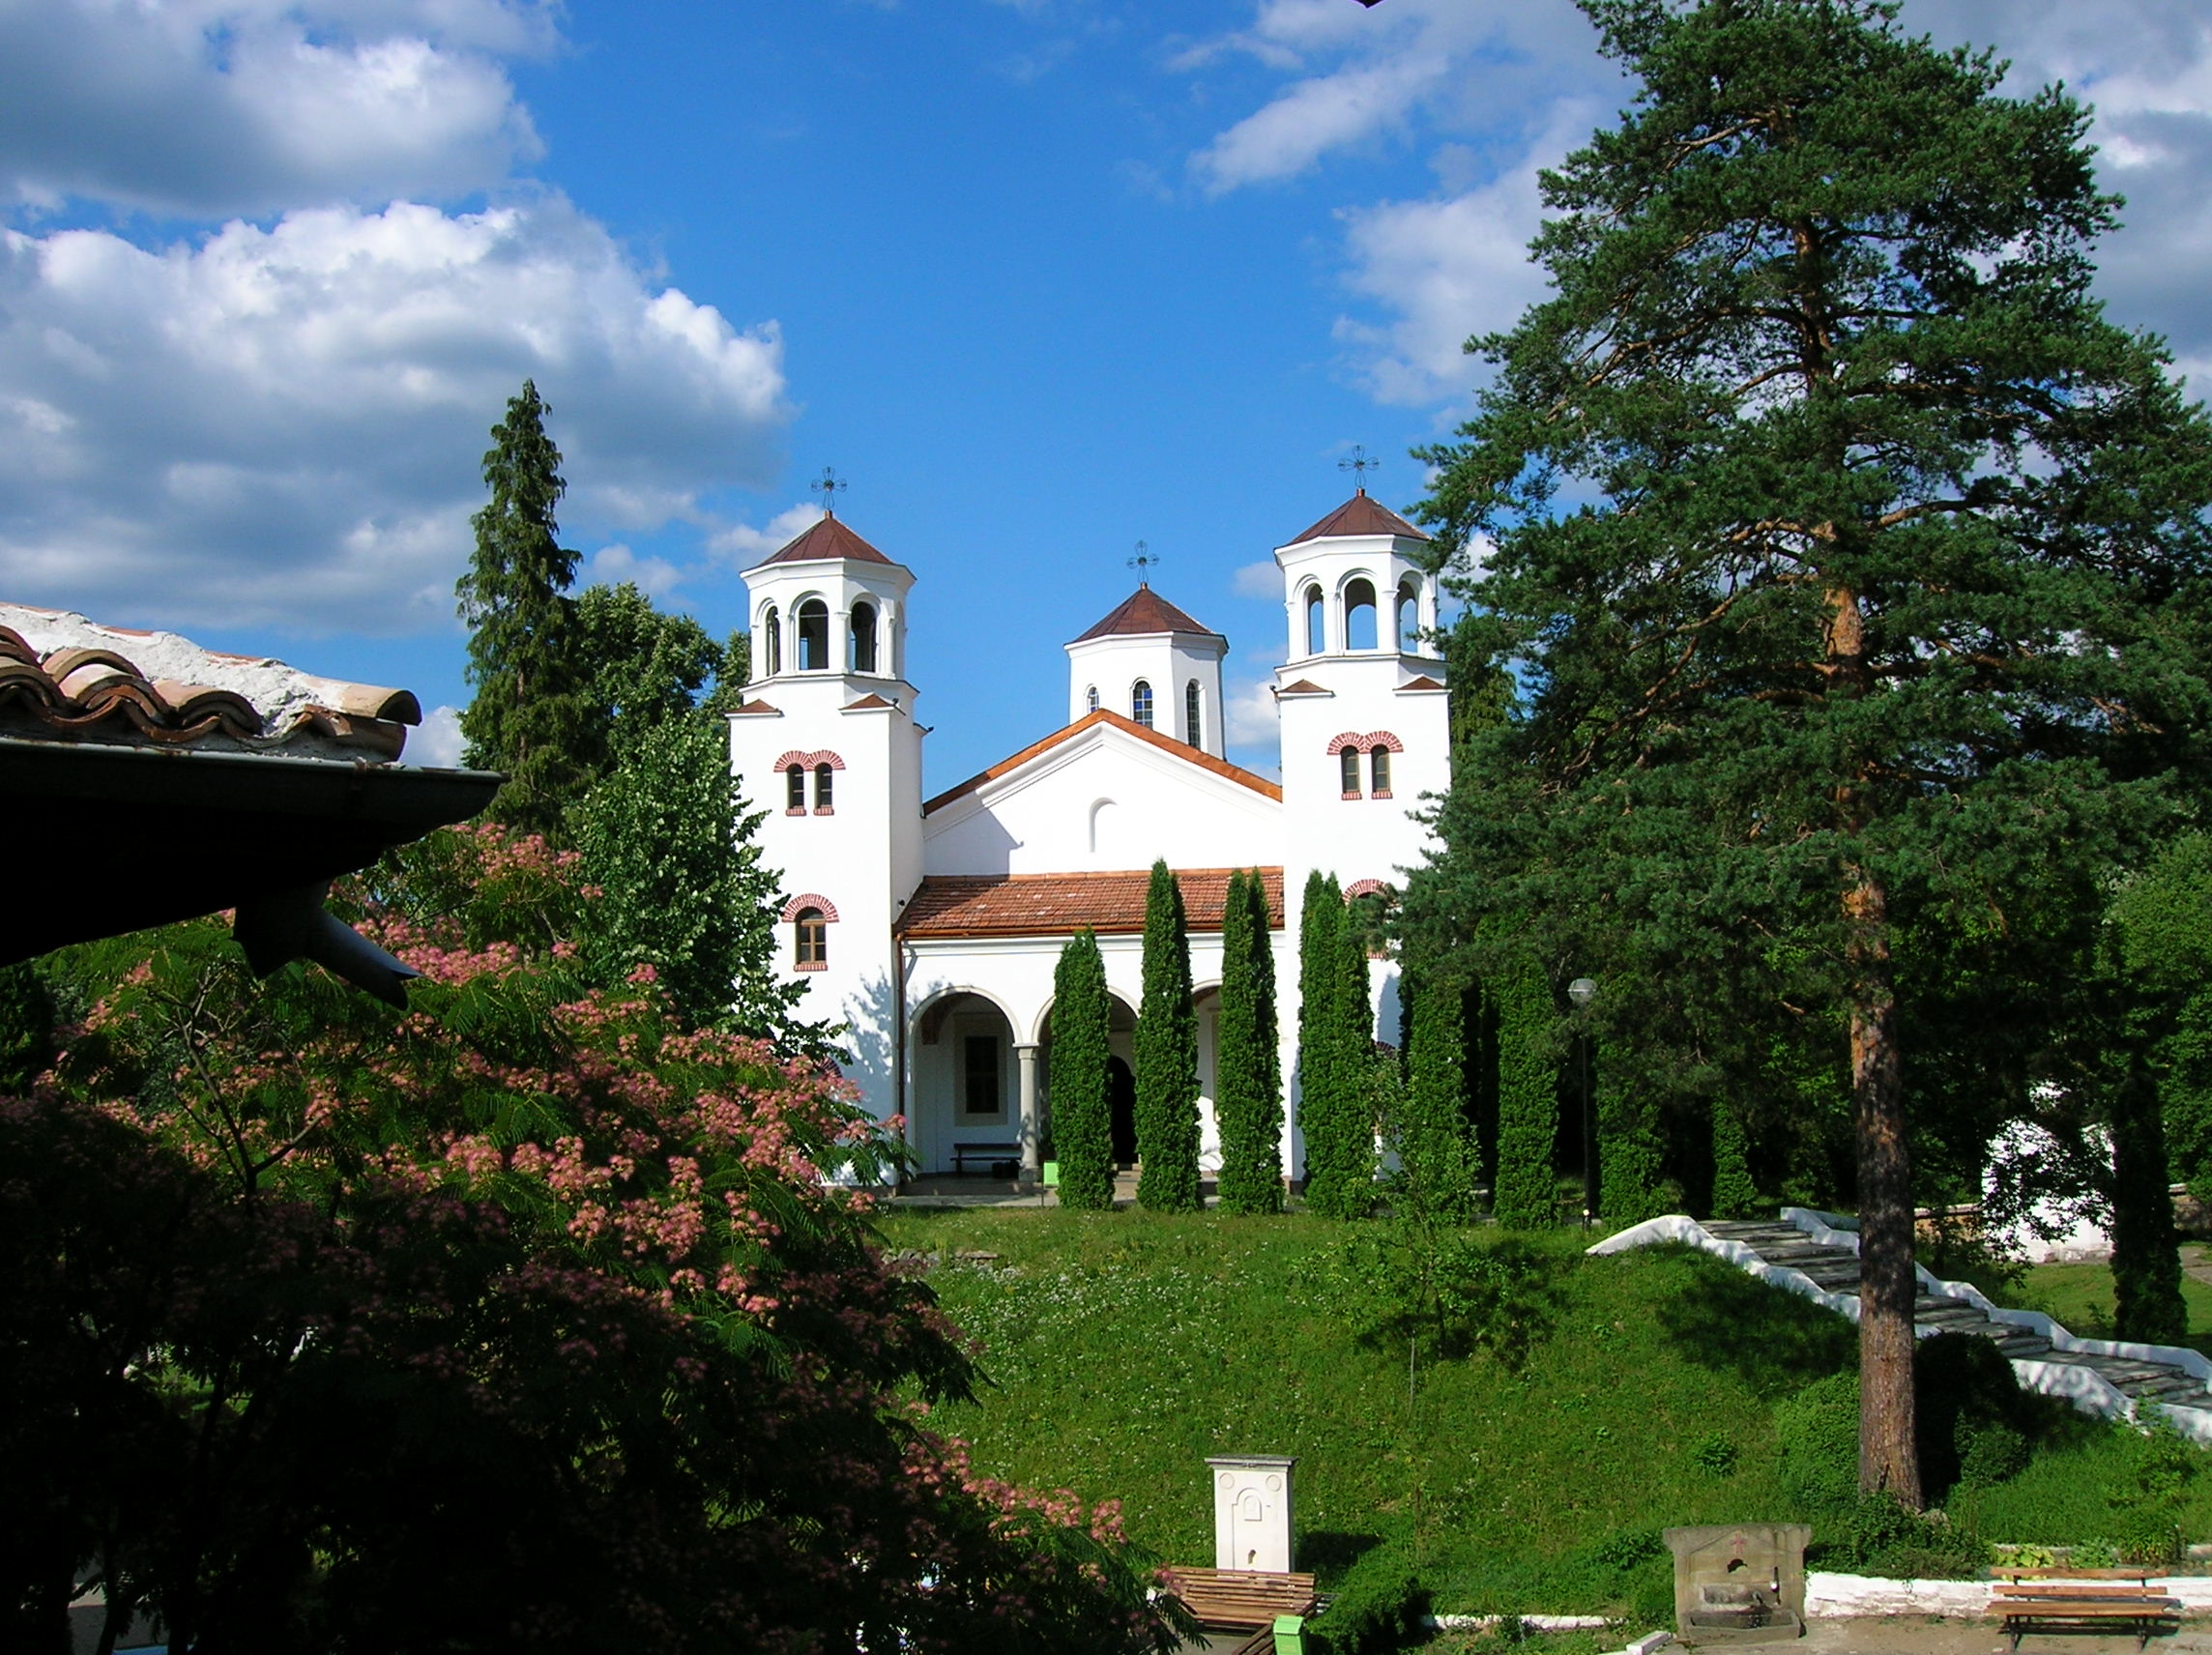 Църквата “Св. Св. Кирил и Методий” заема централната част в Клисурския манастир – видео